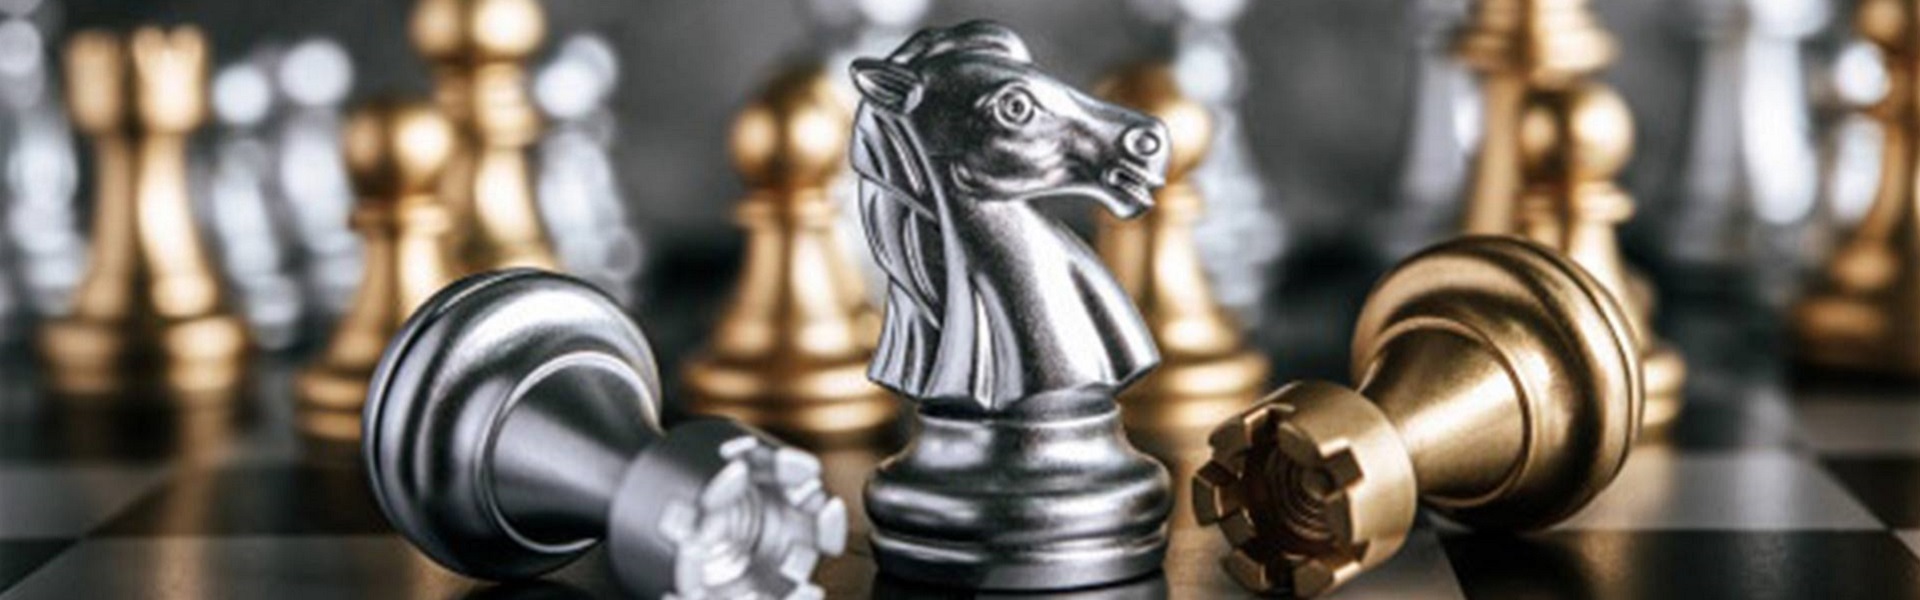 Renault delovi |  Chess lessons Dubai & New York